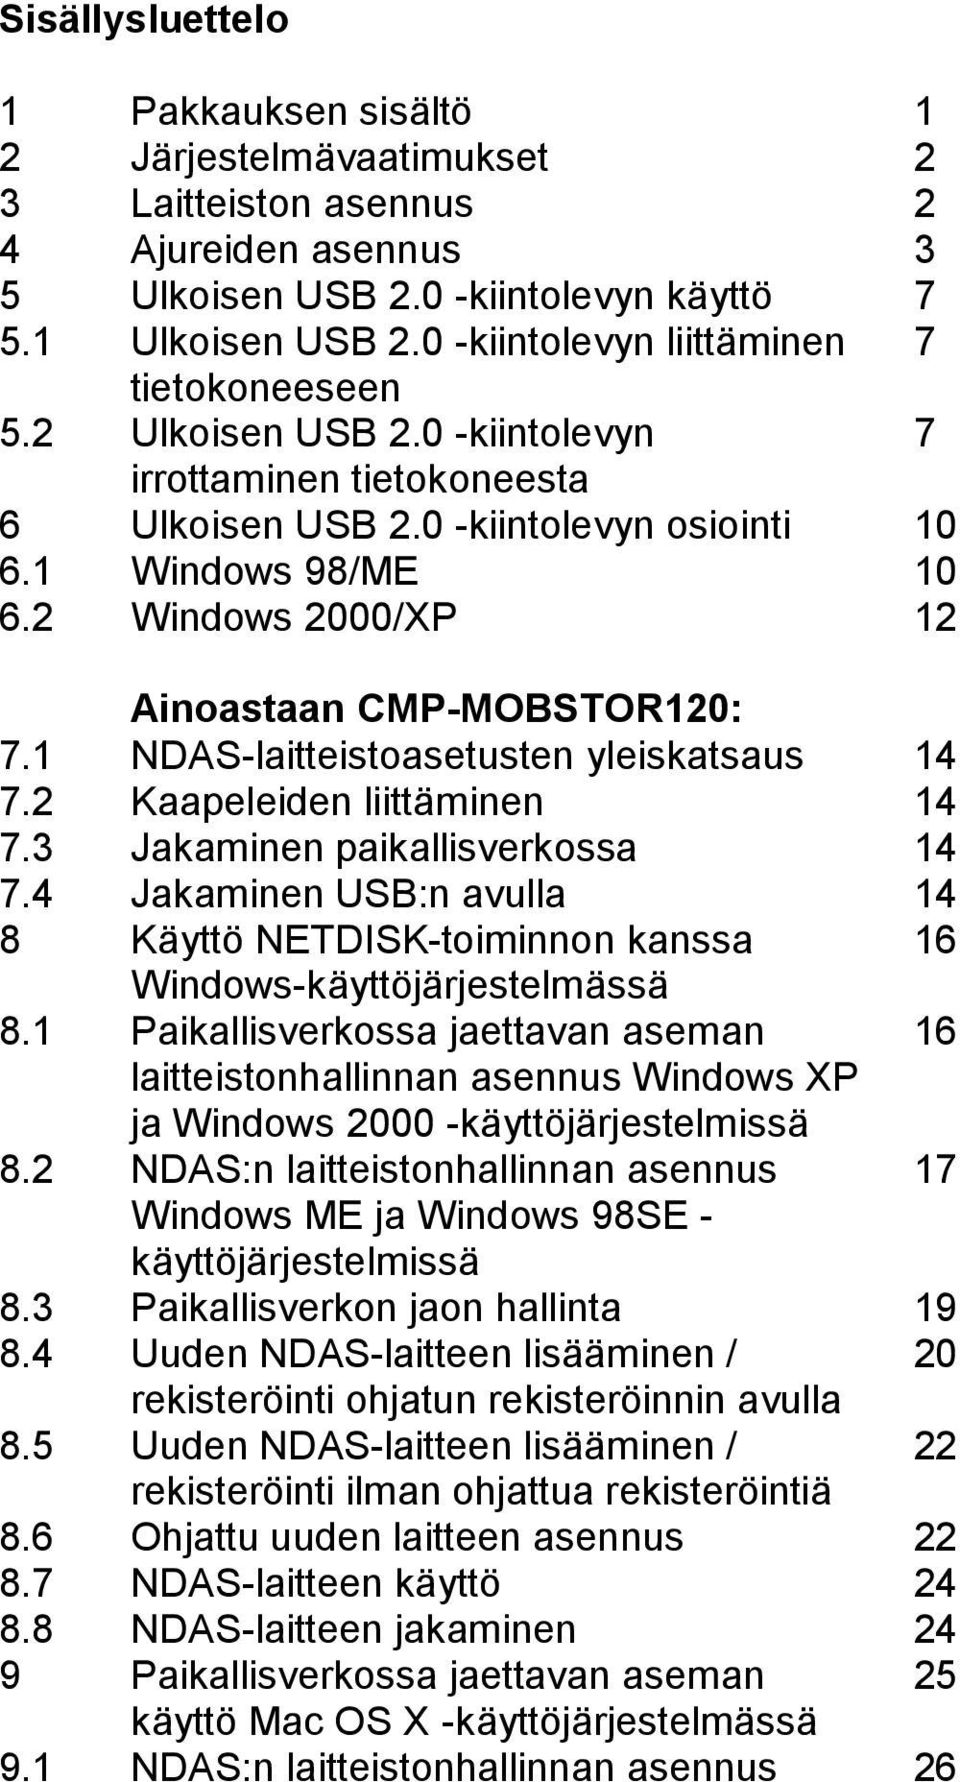 2 Windows 2000/XP 12 Ainoastaan CMP-MOBSTOR120: 7.1 NDAS-laitteistoasetusten yleiskatsaus 14 7.2 Kaapeleiden liittäminen 14 7.3 Jakaminen paikallisverkossa 14 7.